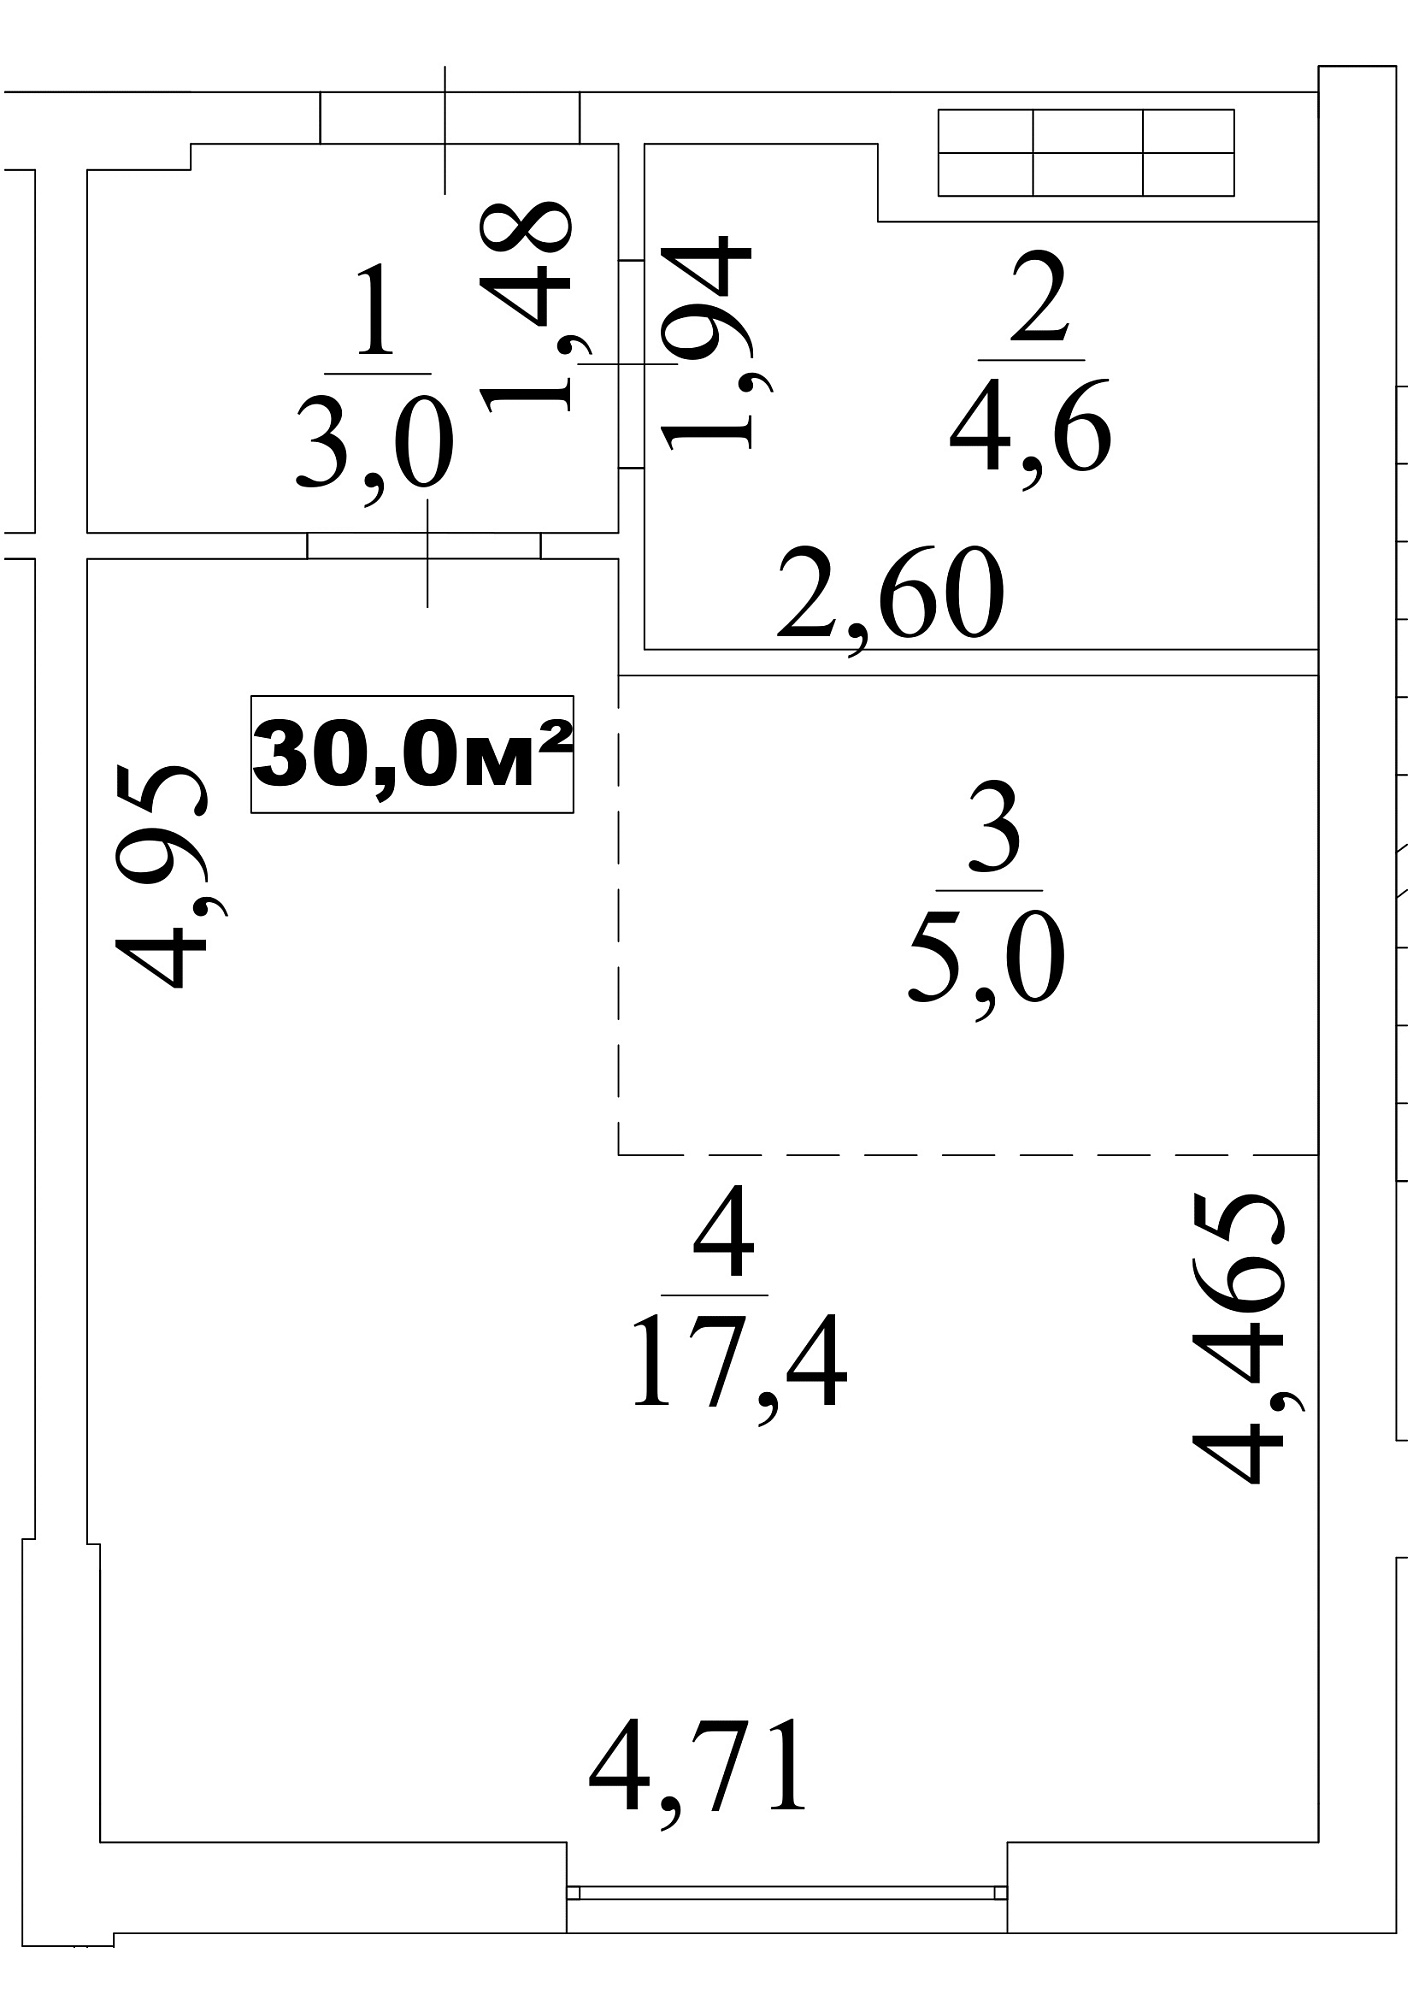 Планировка Smart-квартира площей 30м2, AB-10-06/0046а.